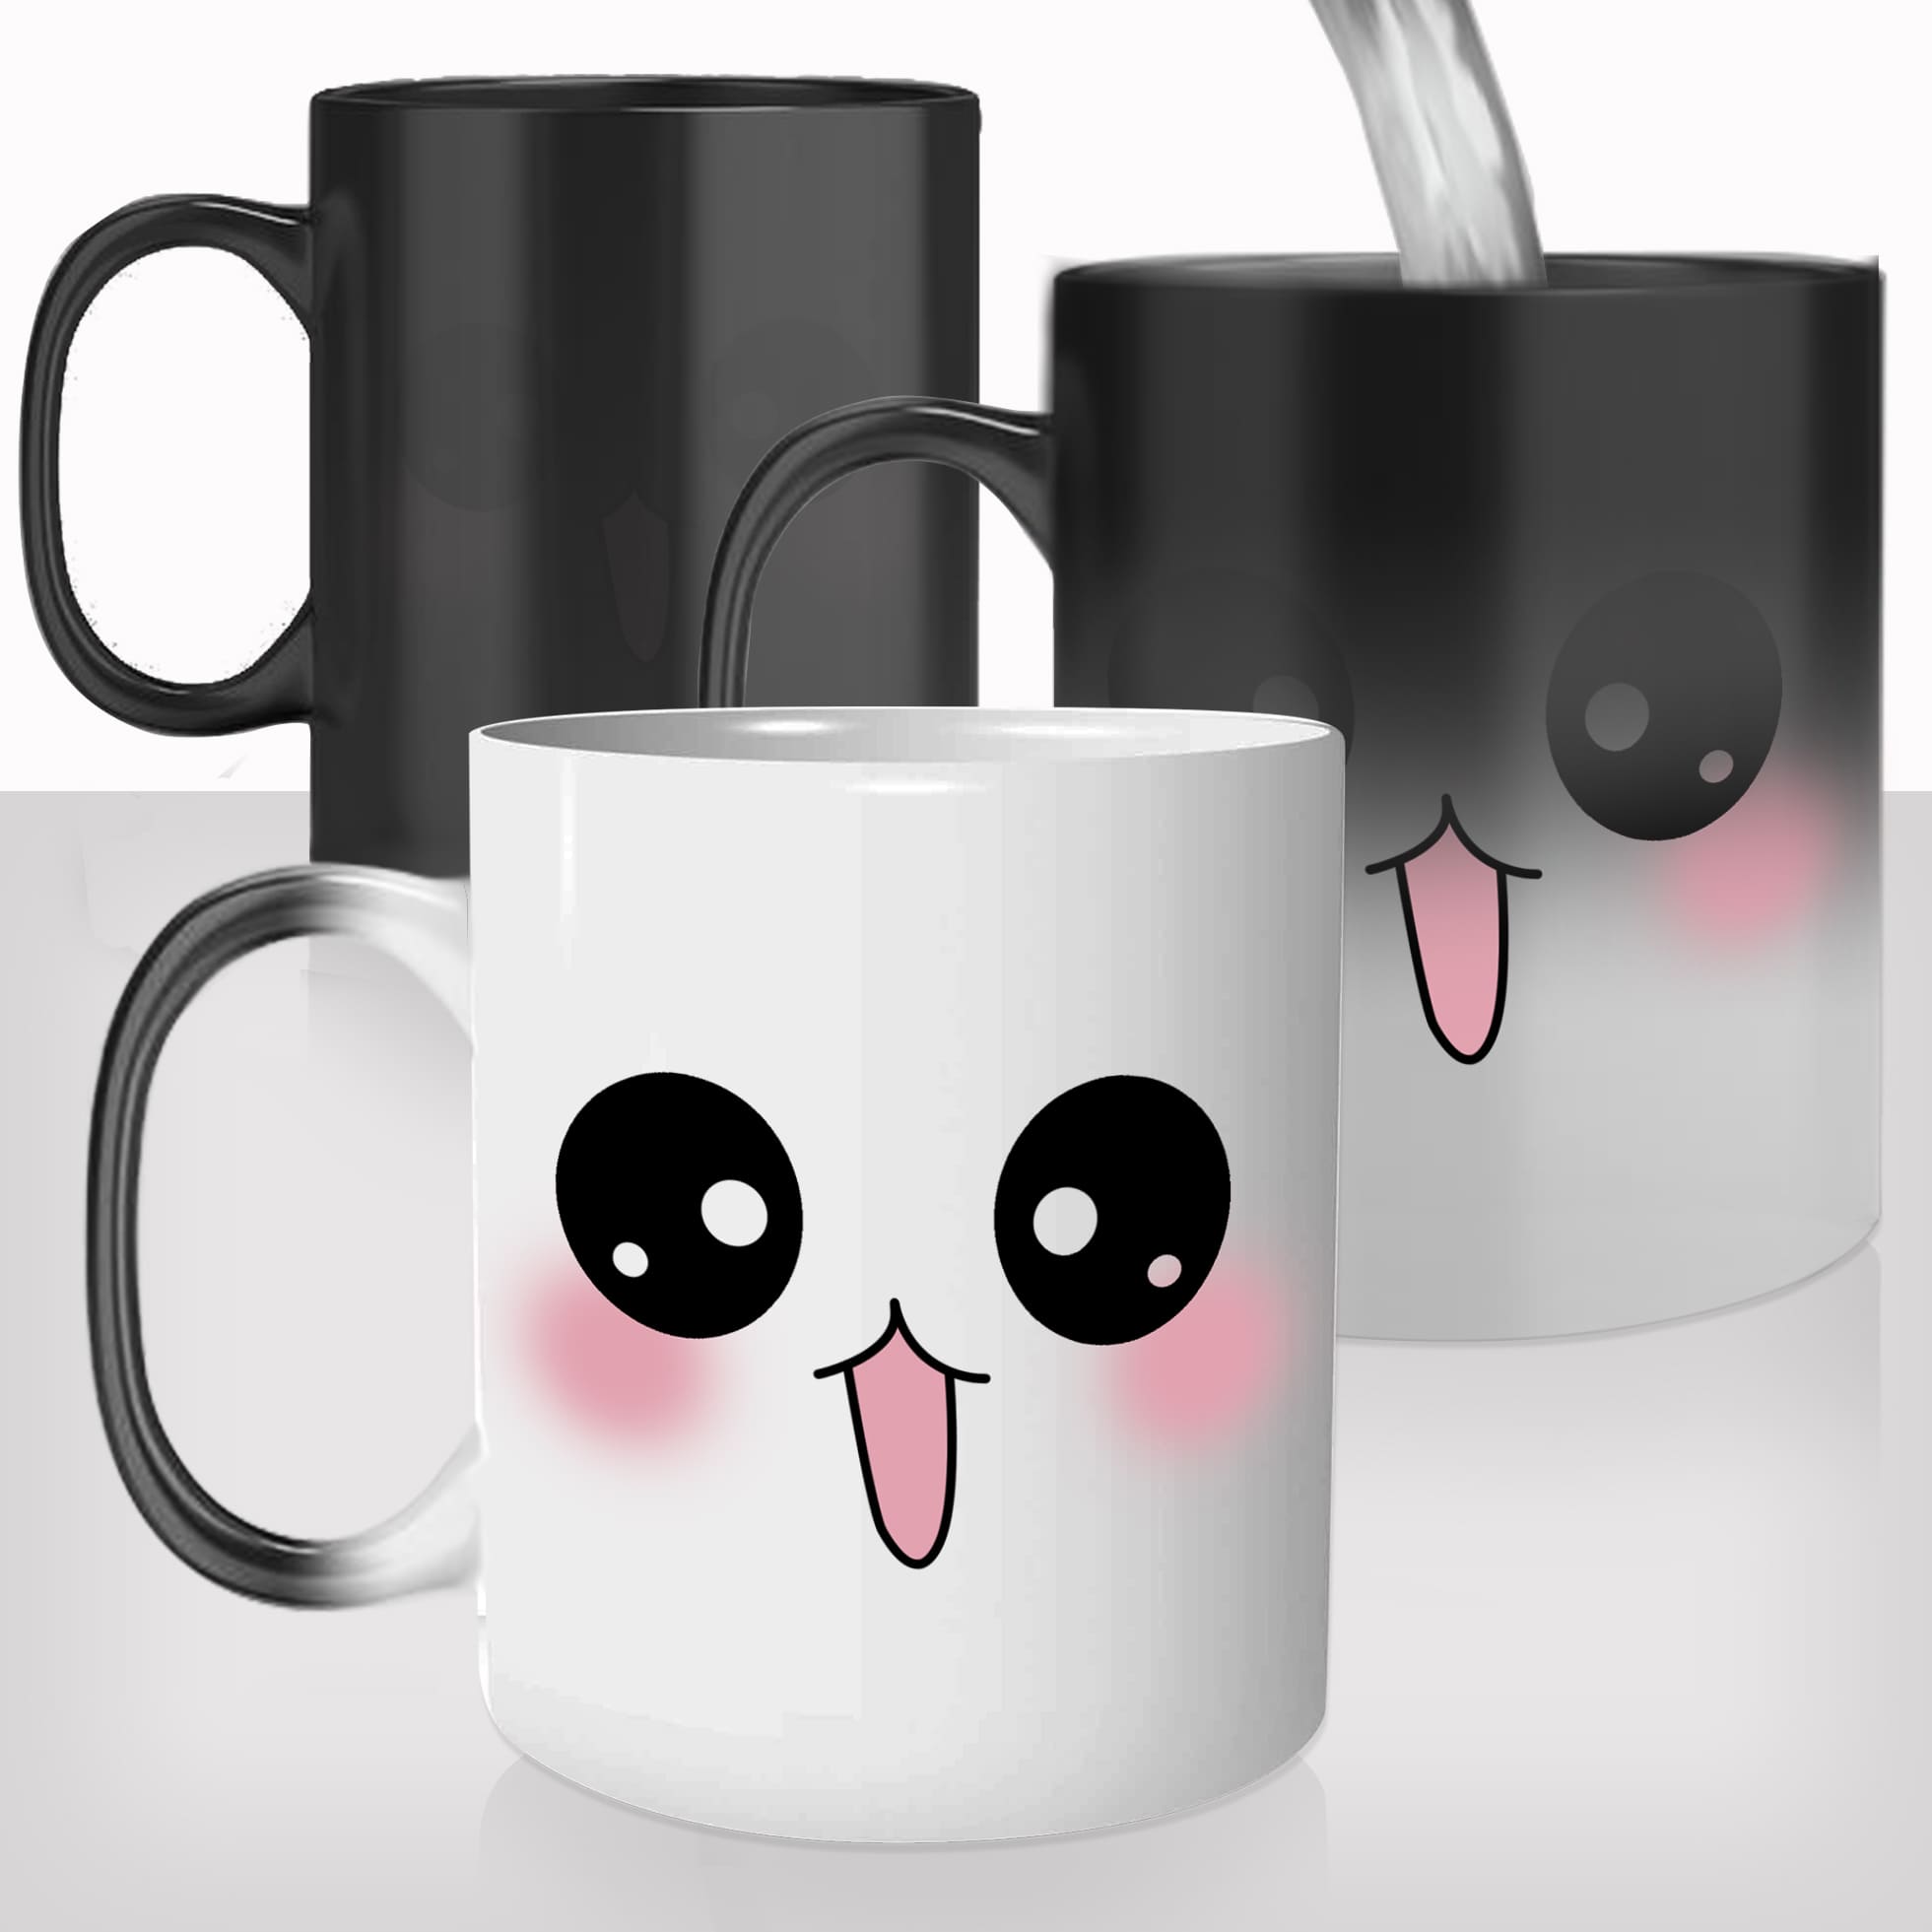 mug-magique-magic-tasse-originale-thermique-mignon-visage-style-kawaii-japonais-original-japon-rose-dessin-offrir-idée-cadeau-fun